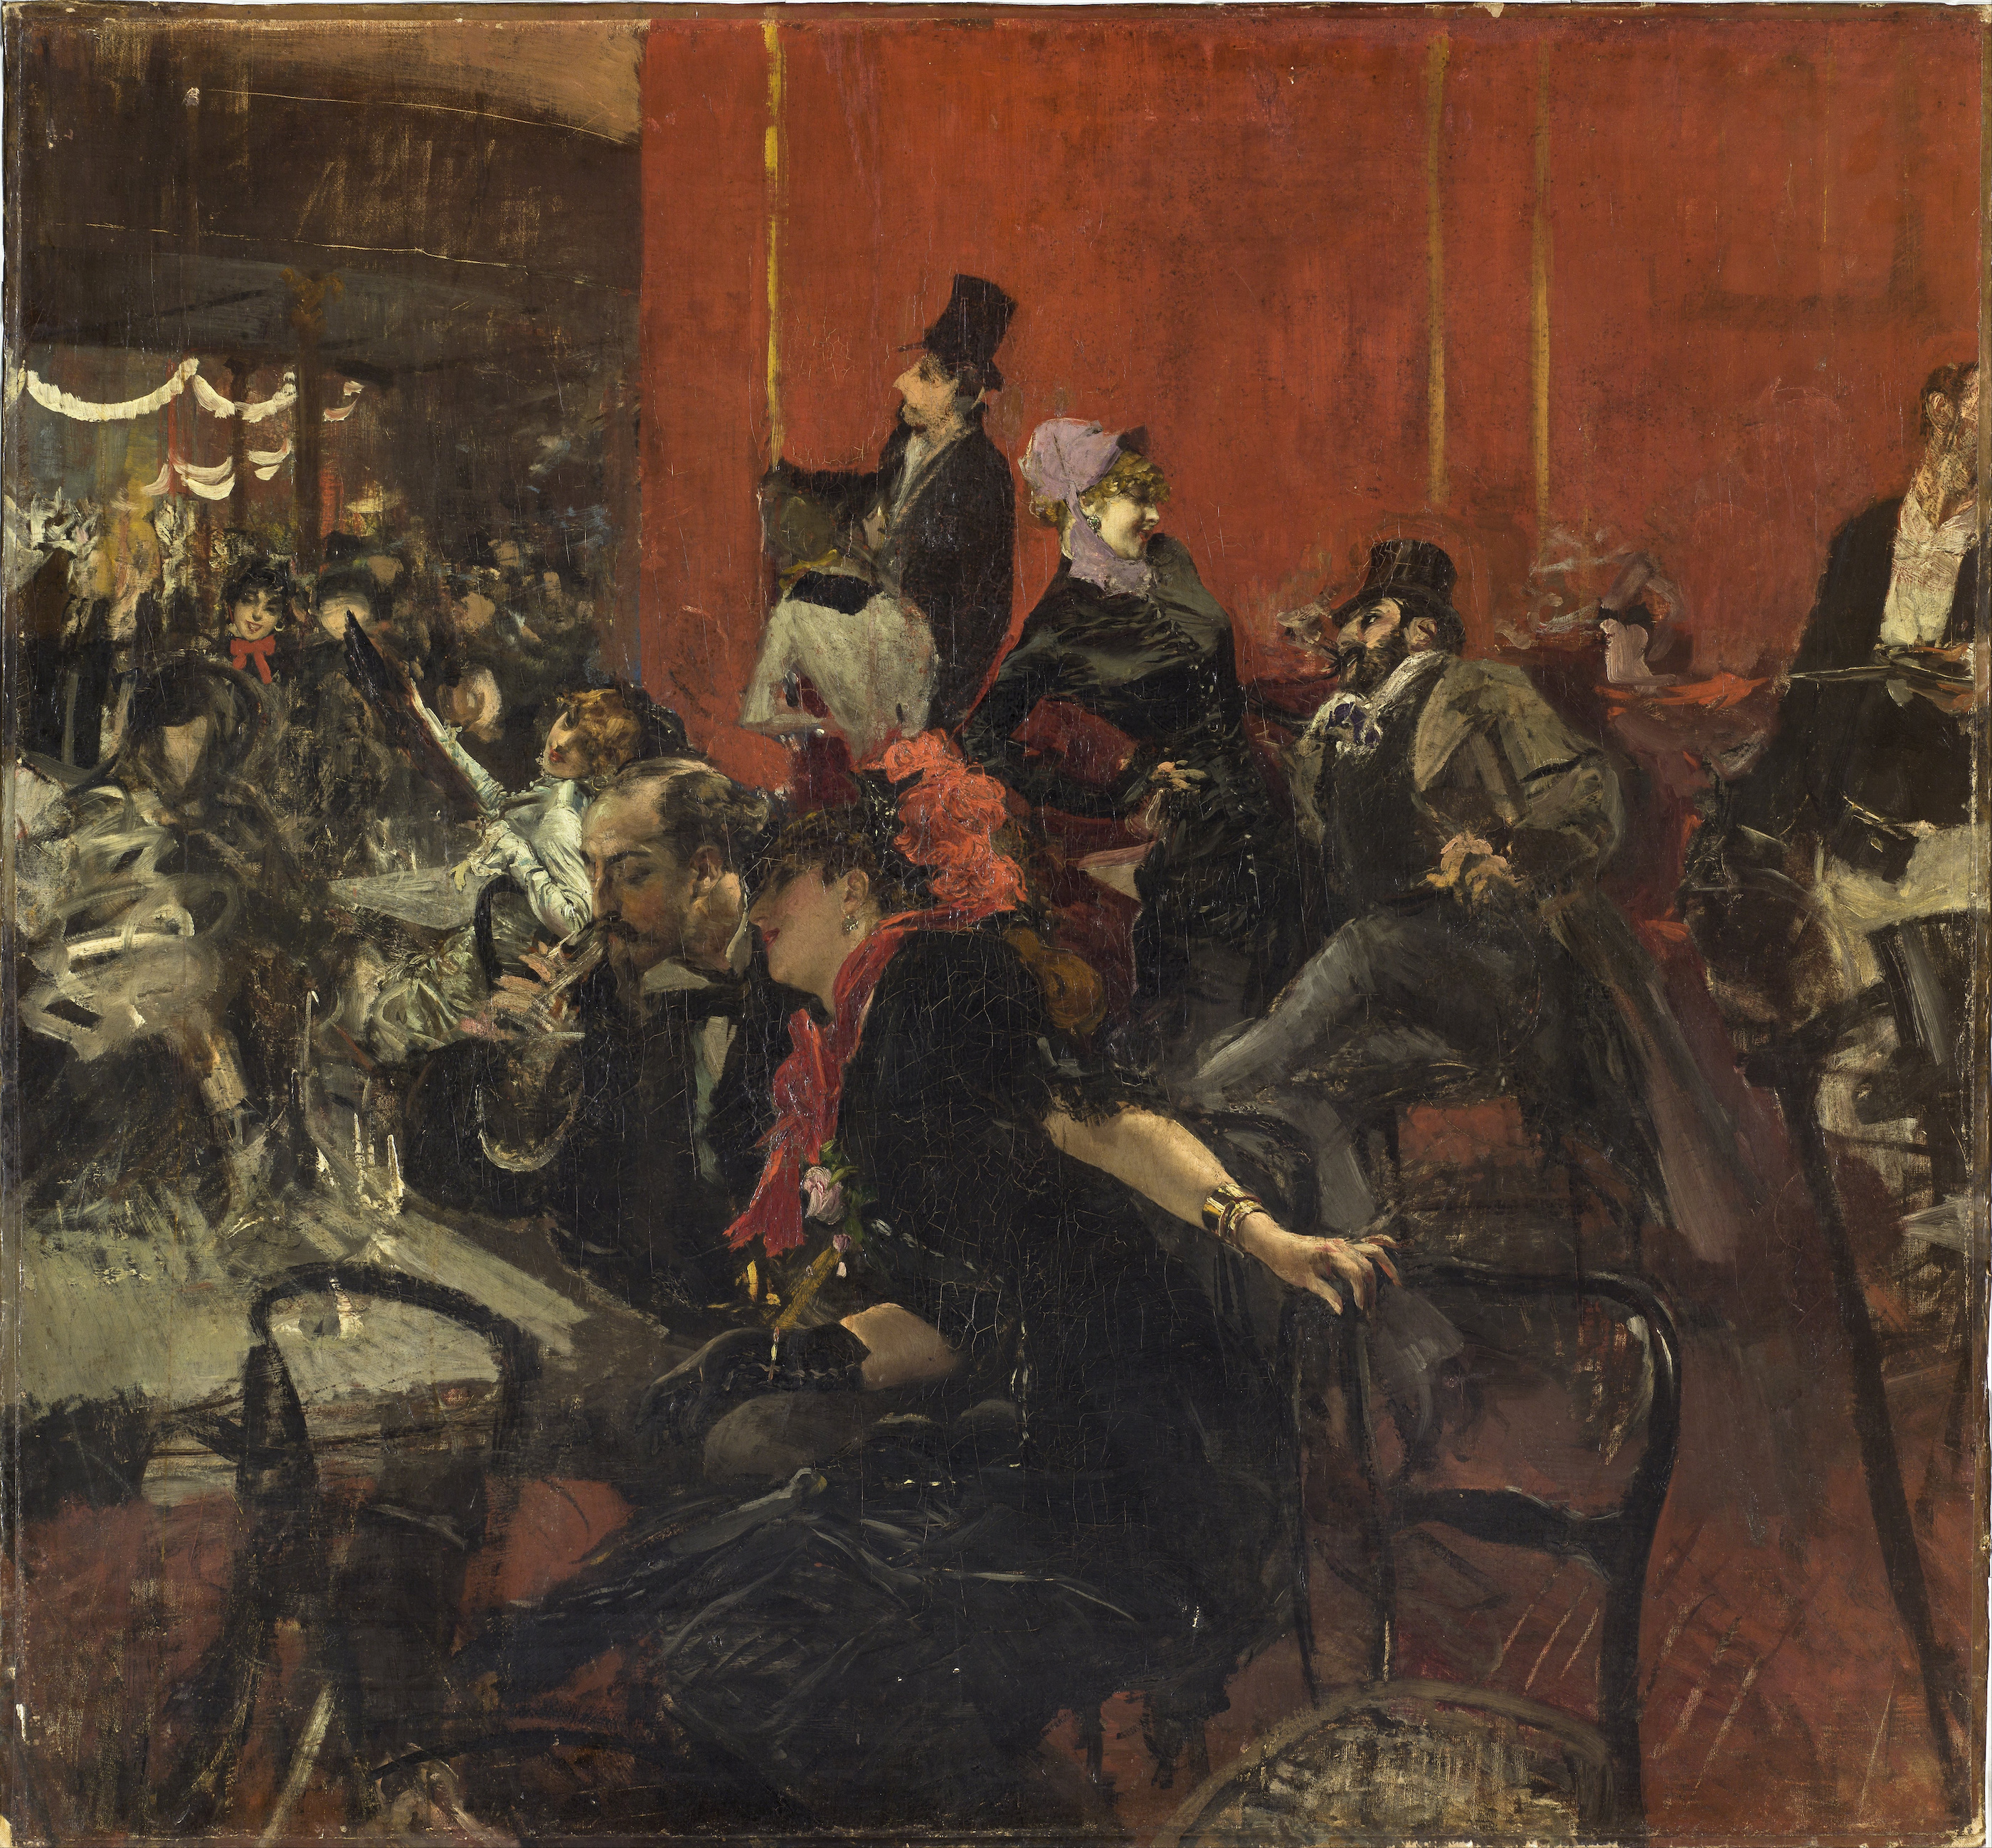 Escena de fiesta by Giovanni Boldini - 1889 - 104 x 960 cm Musée d'Orsay